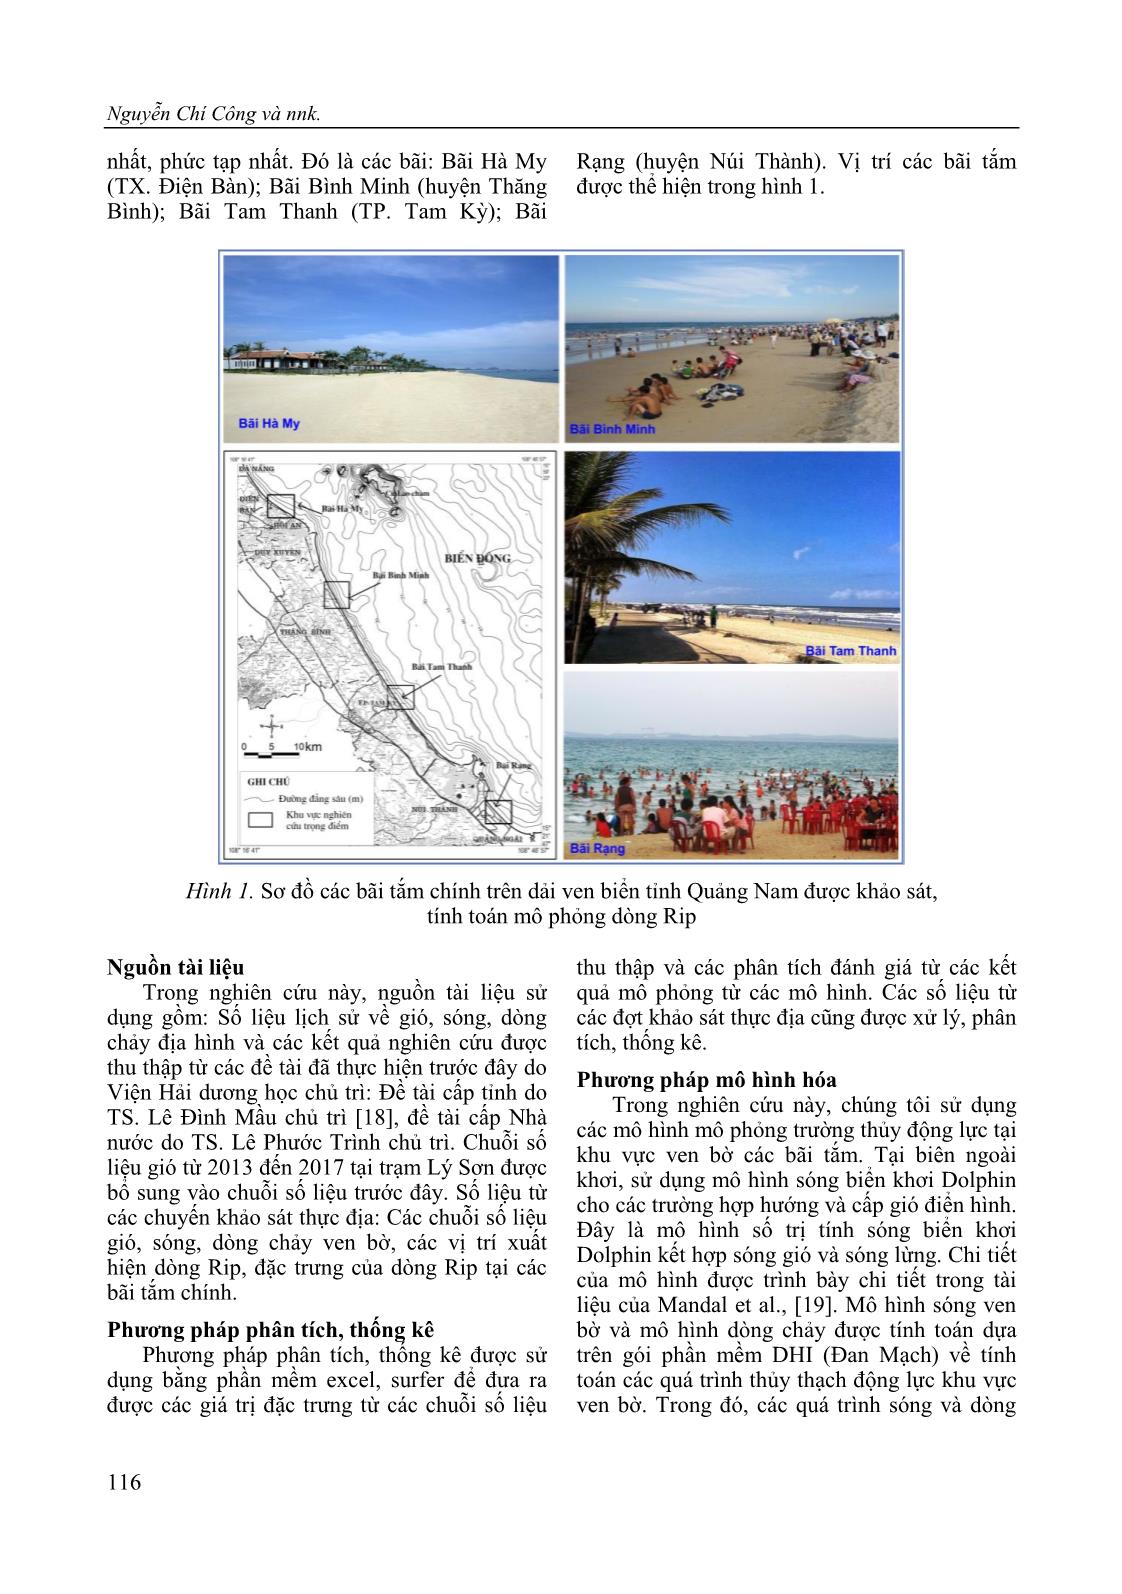 Mô phỏng dòng Rip (Rip current) tại một số bãi tắm ven biển tỉnh Quảng Nam trang 4